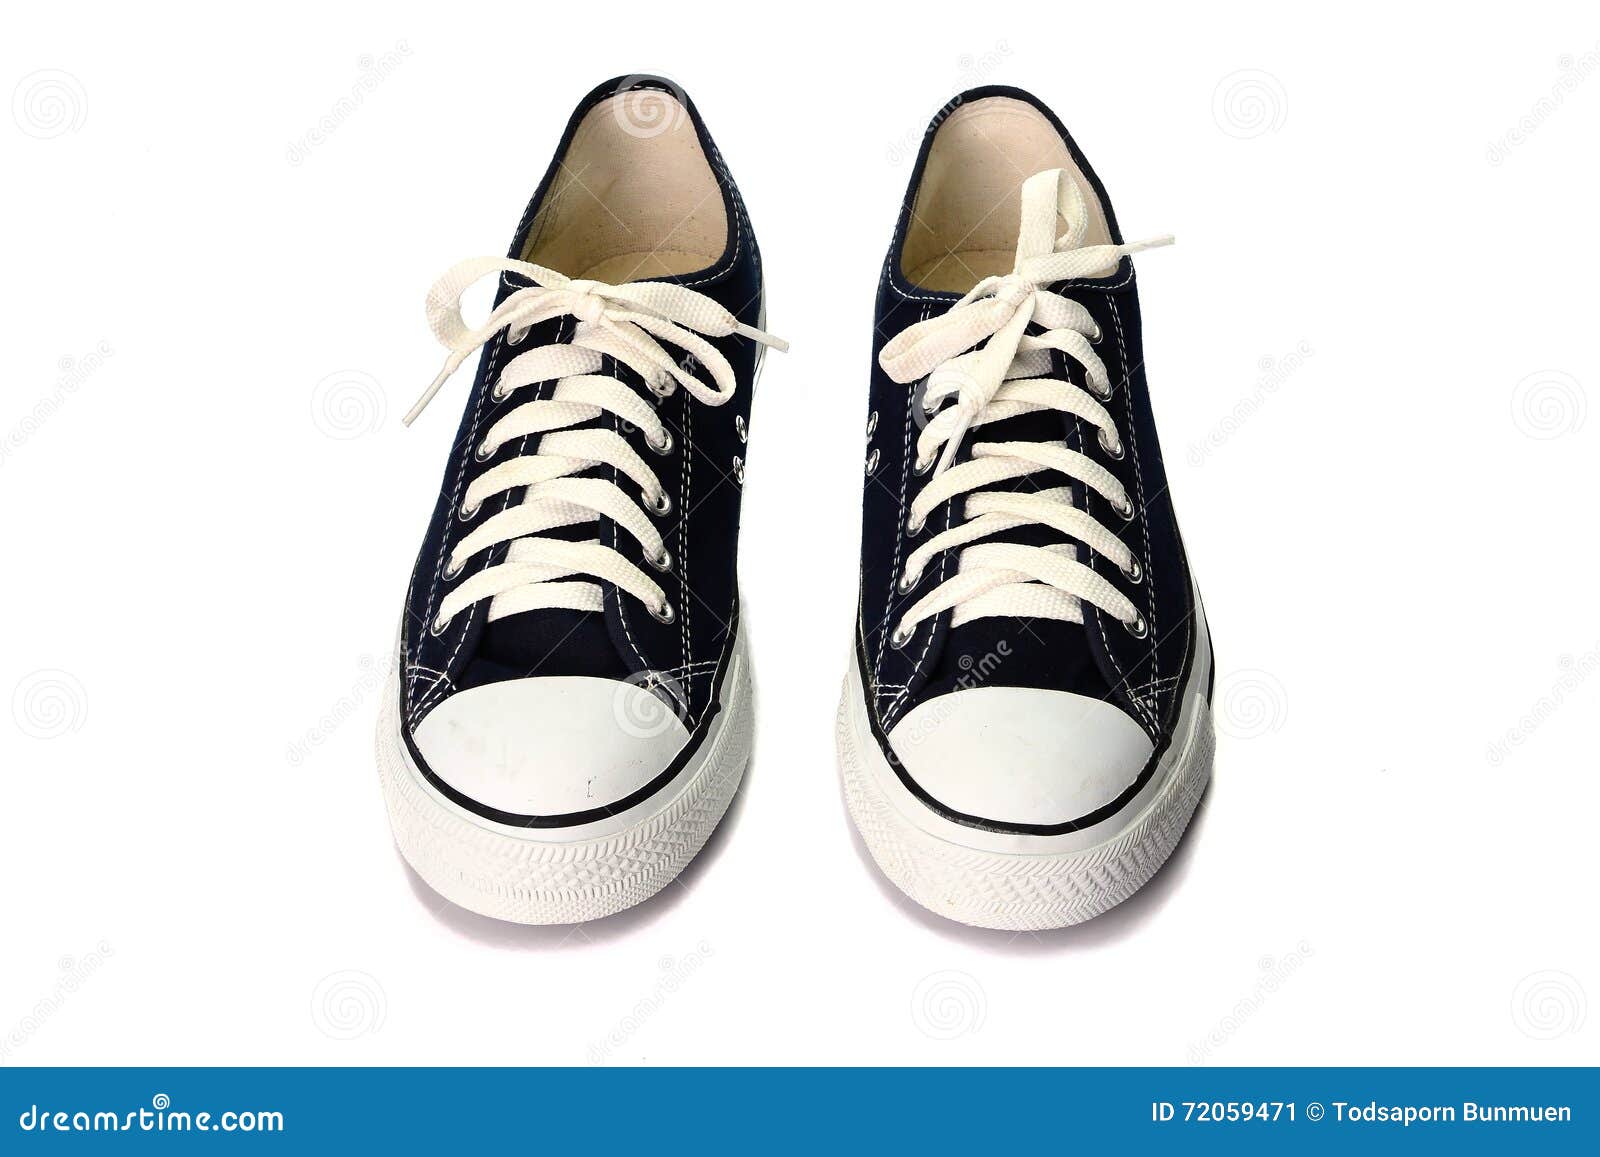 Dark Blue Shoes Isolated on White Background Stock Image - Image of ...